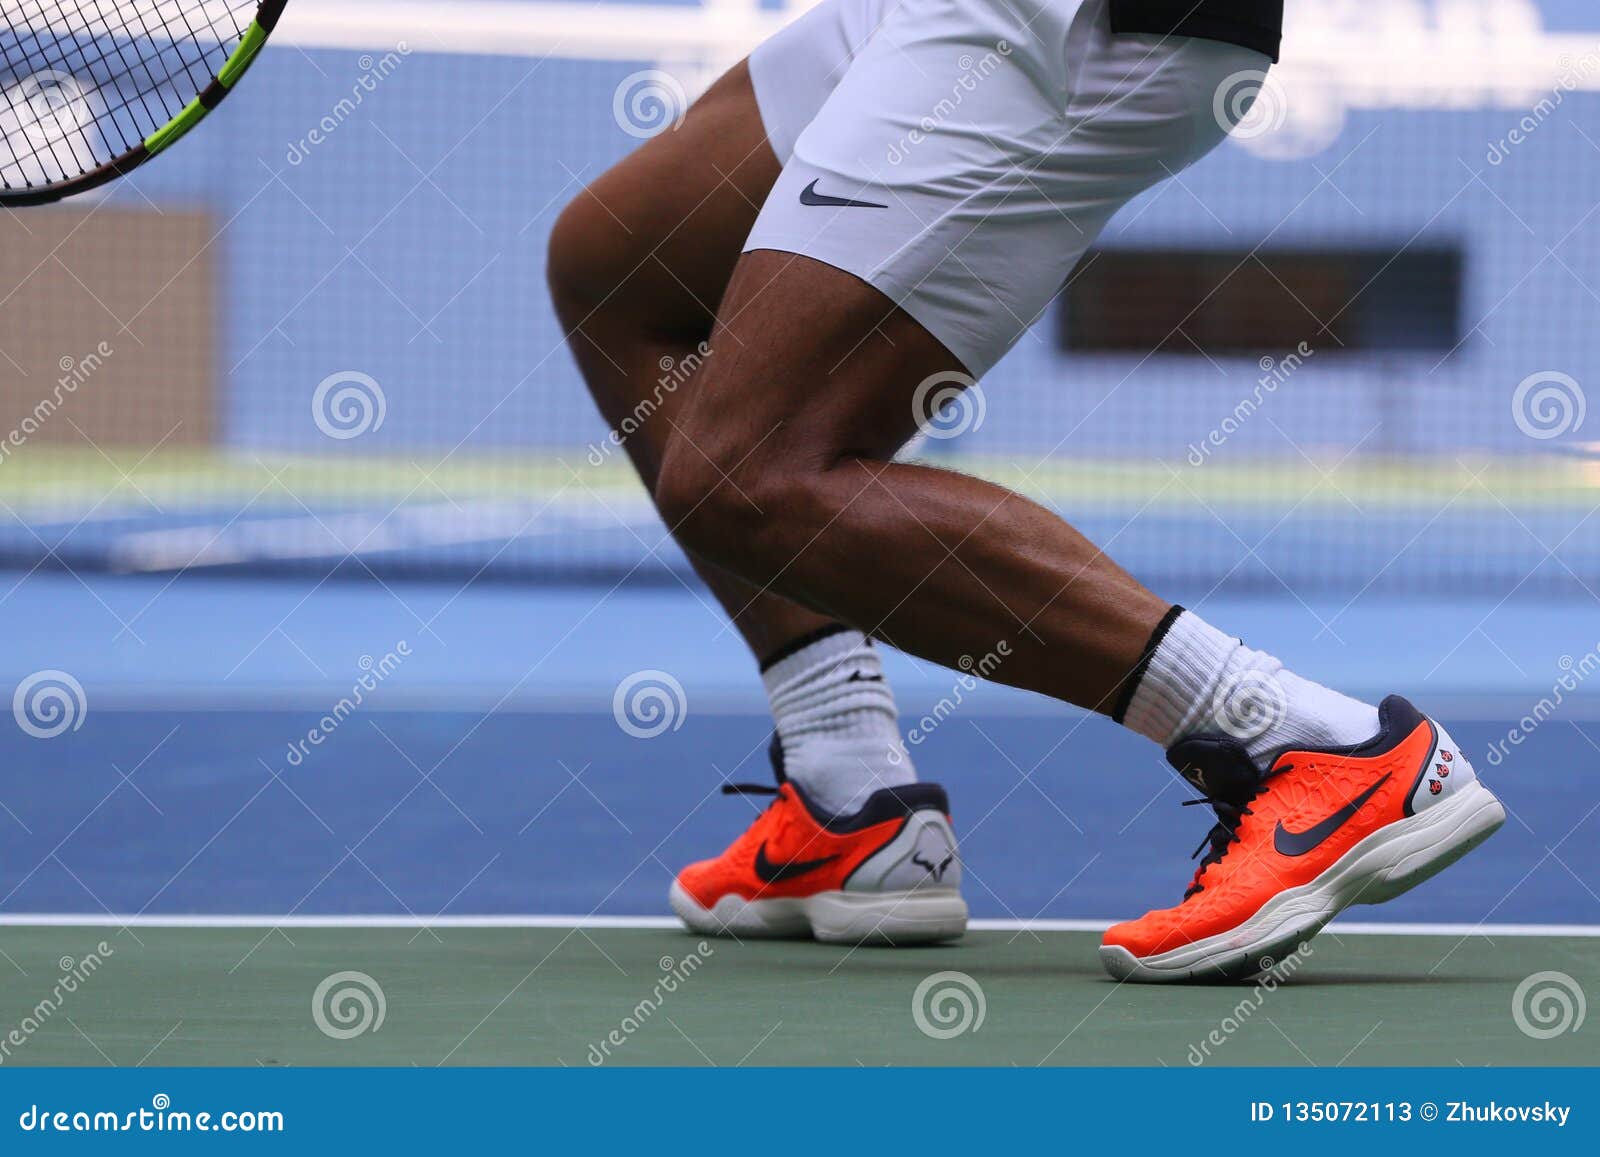 El Campeón Rafael Nadal De Slam España Lleva Las Zapatos Tenis De Encargo De Nike Durante El US Open Foto de archivo editorial - Imagen de puntas, 135072113